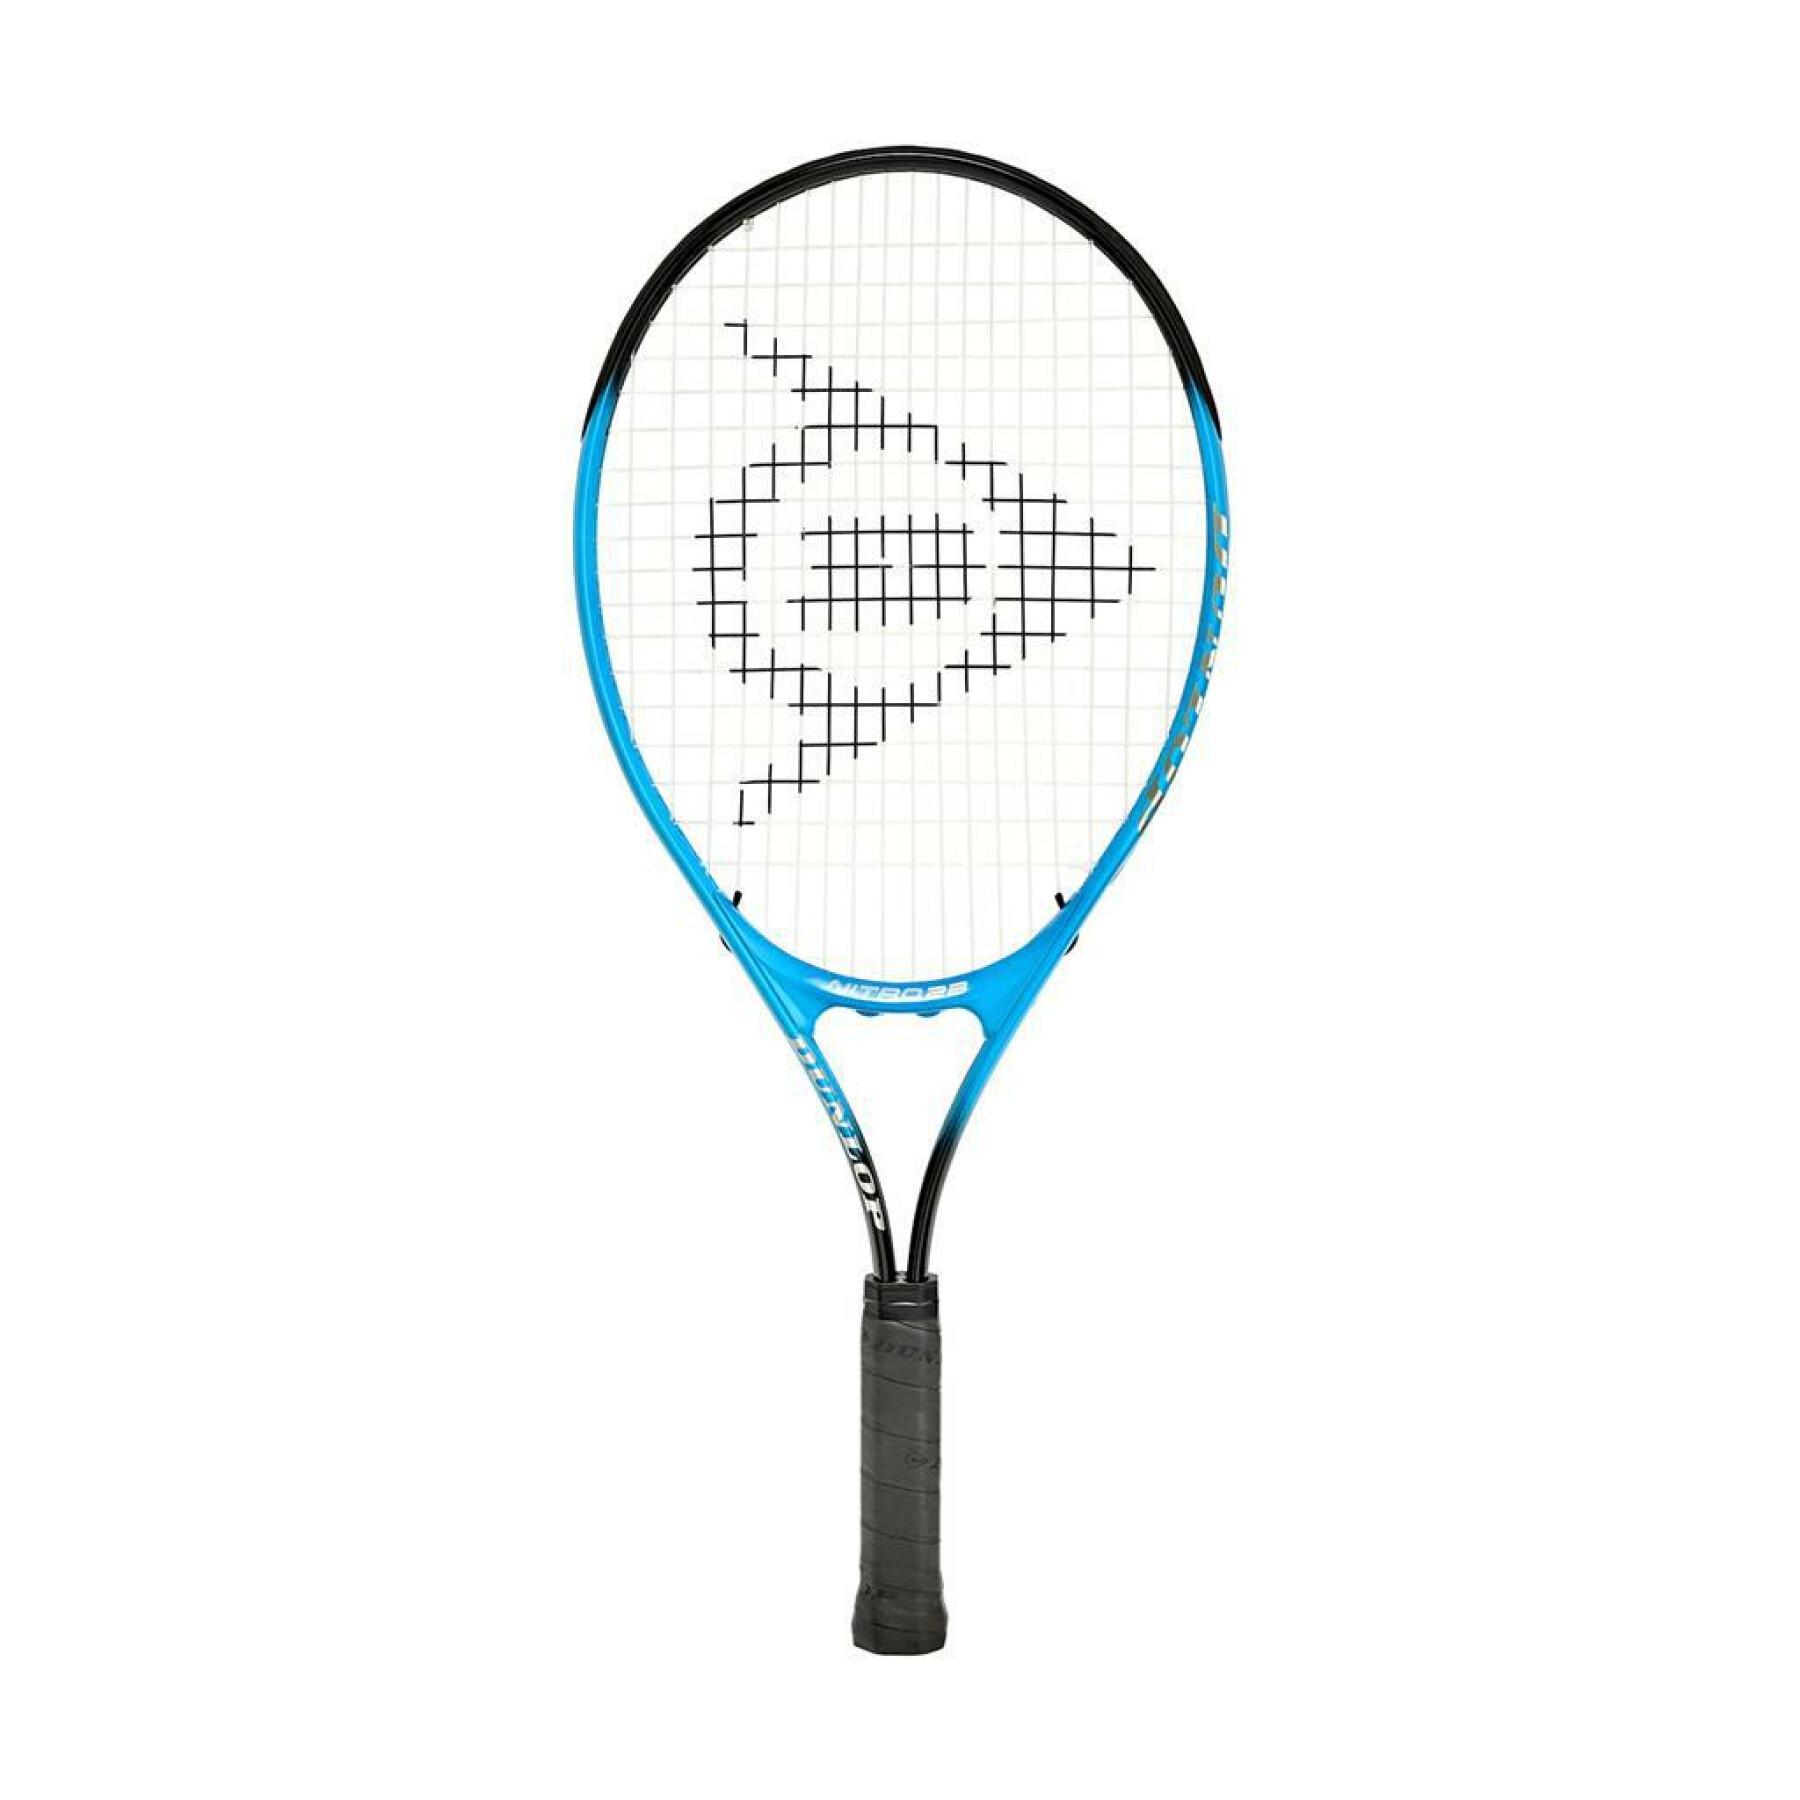 Children's racket Dunlop nitro 23 g00